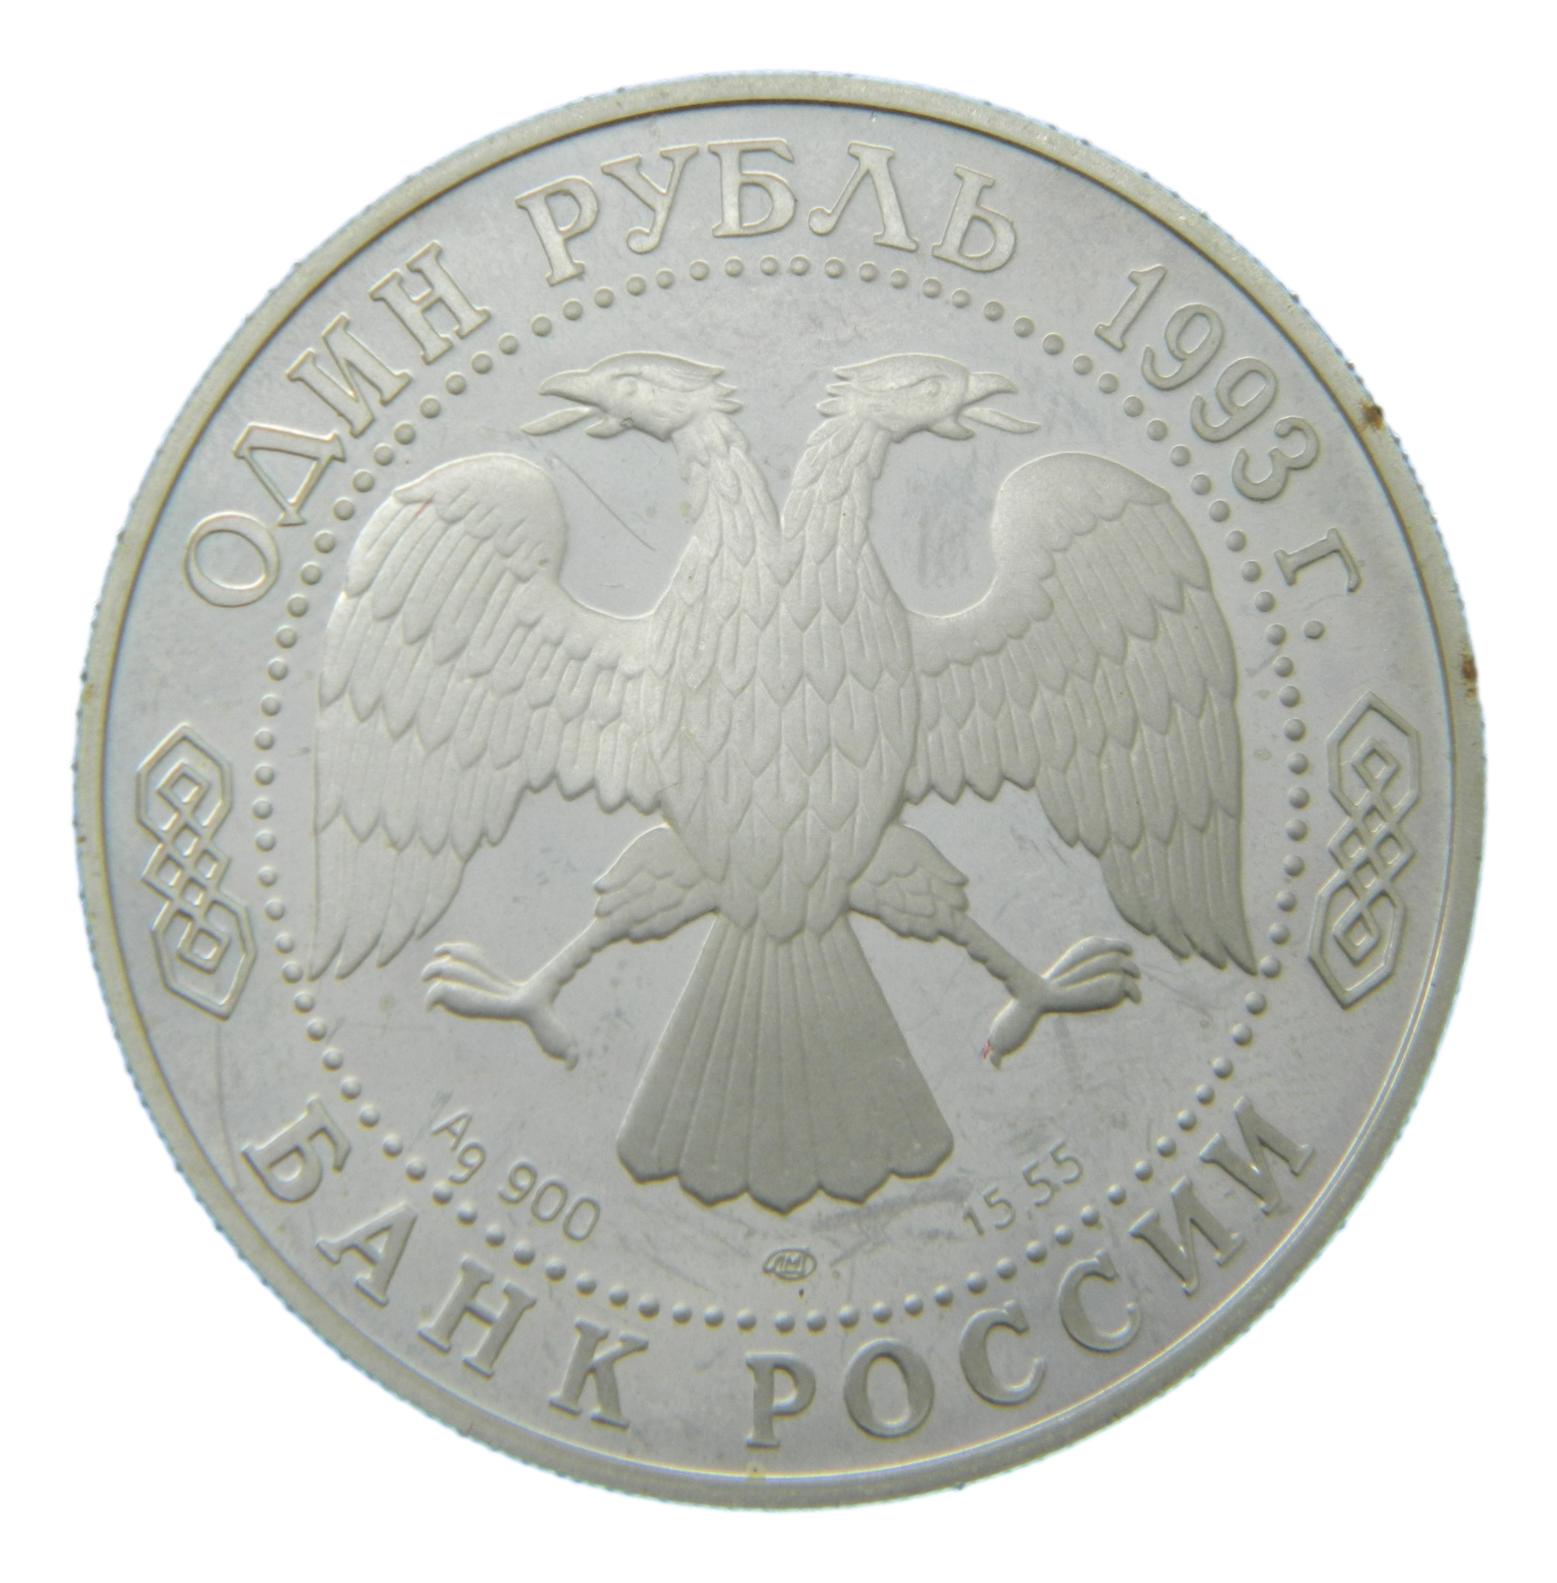 1993 - RUSIA - RUBLO - PLATA - PROOF - S6